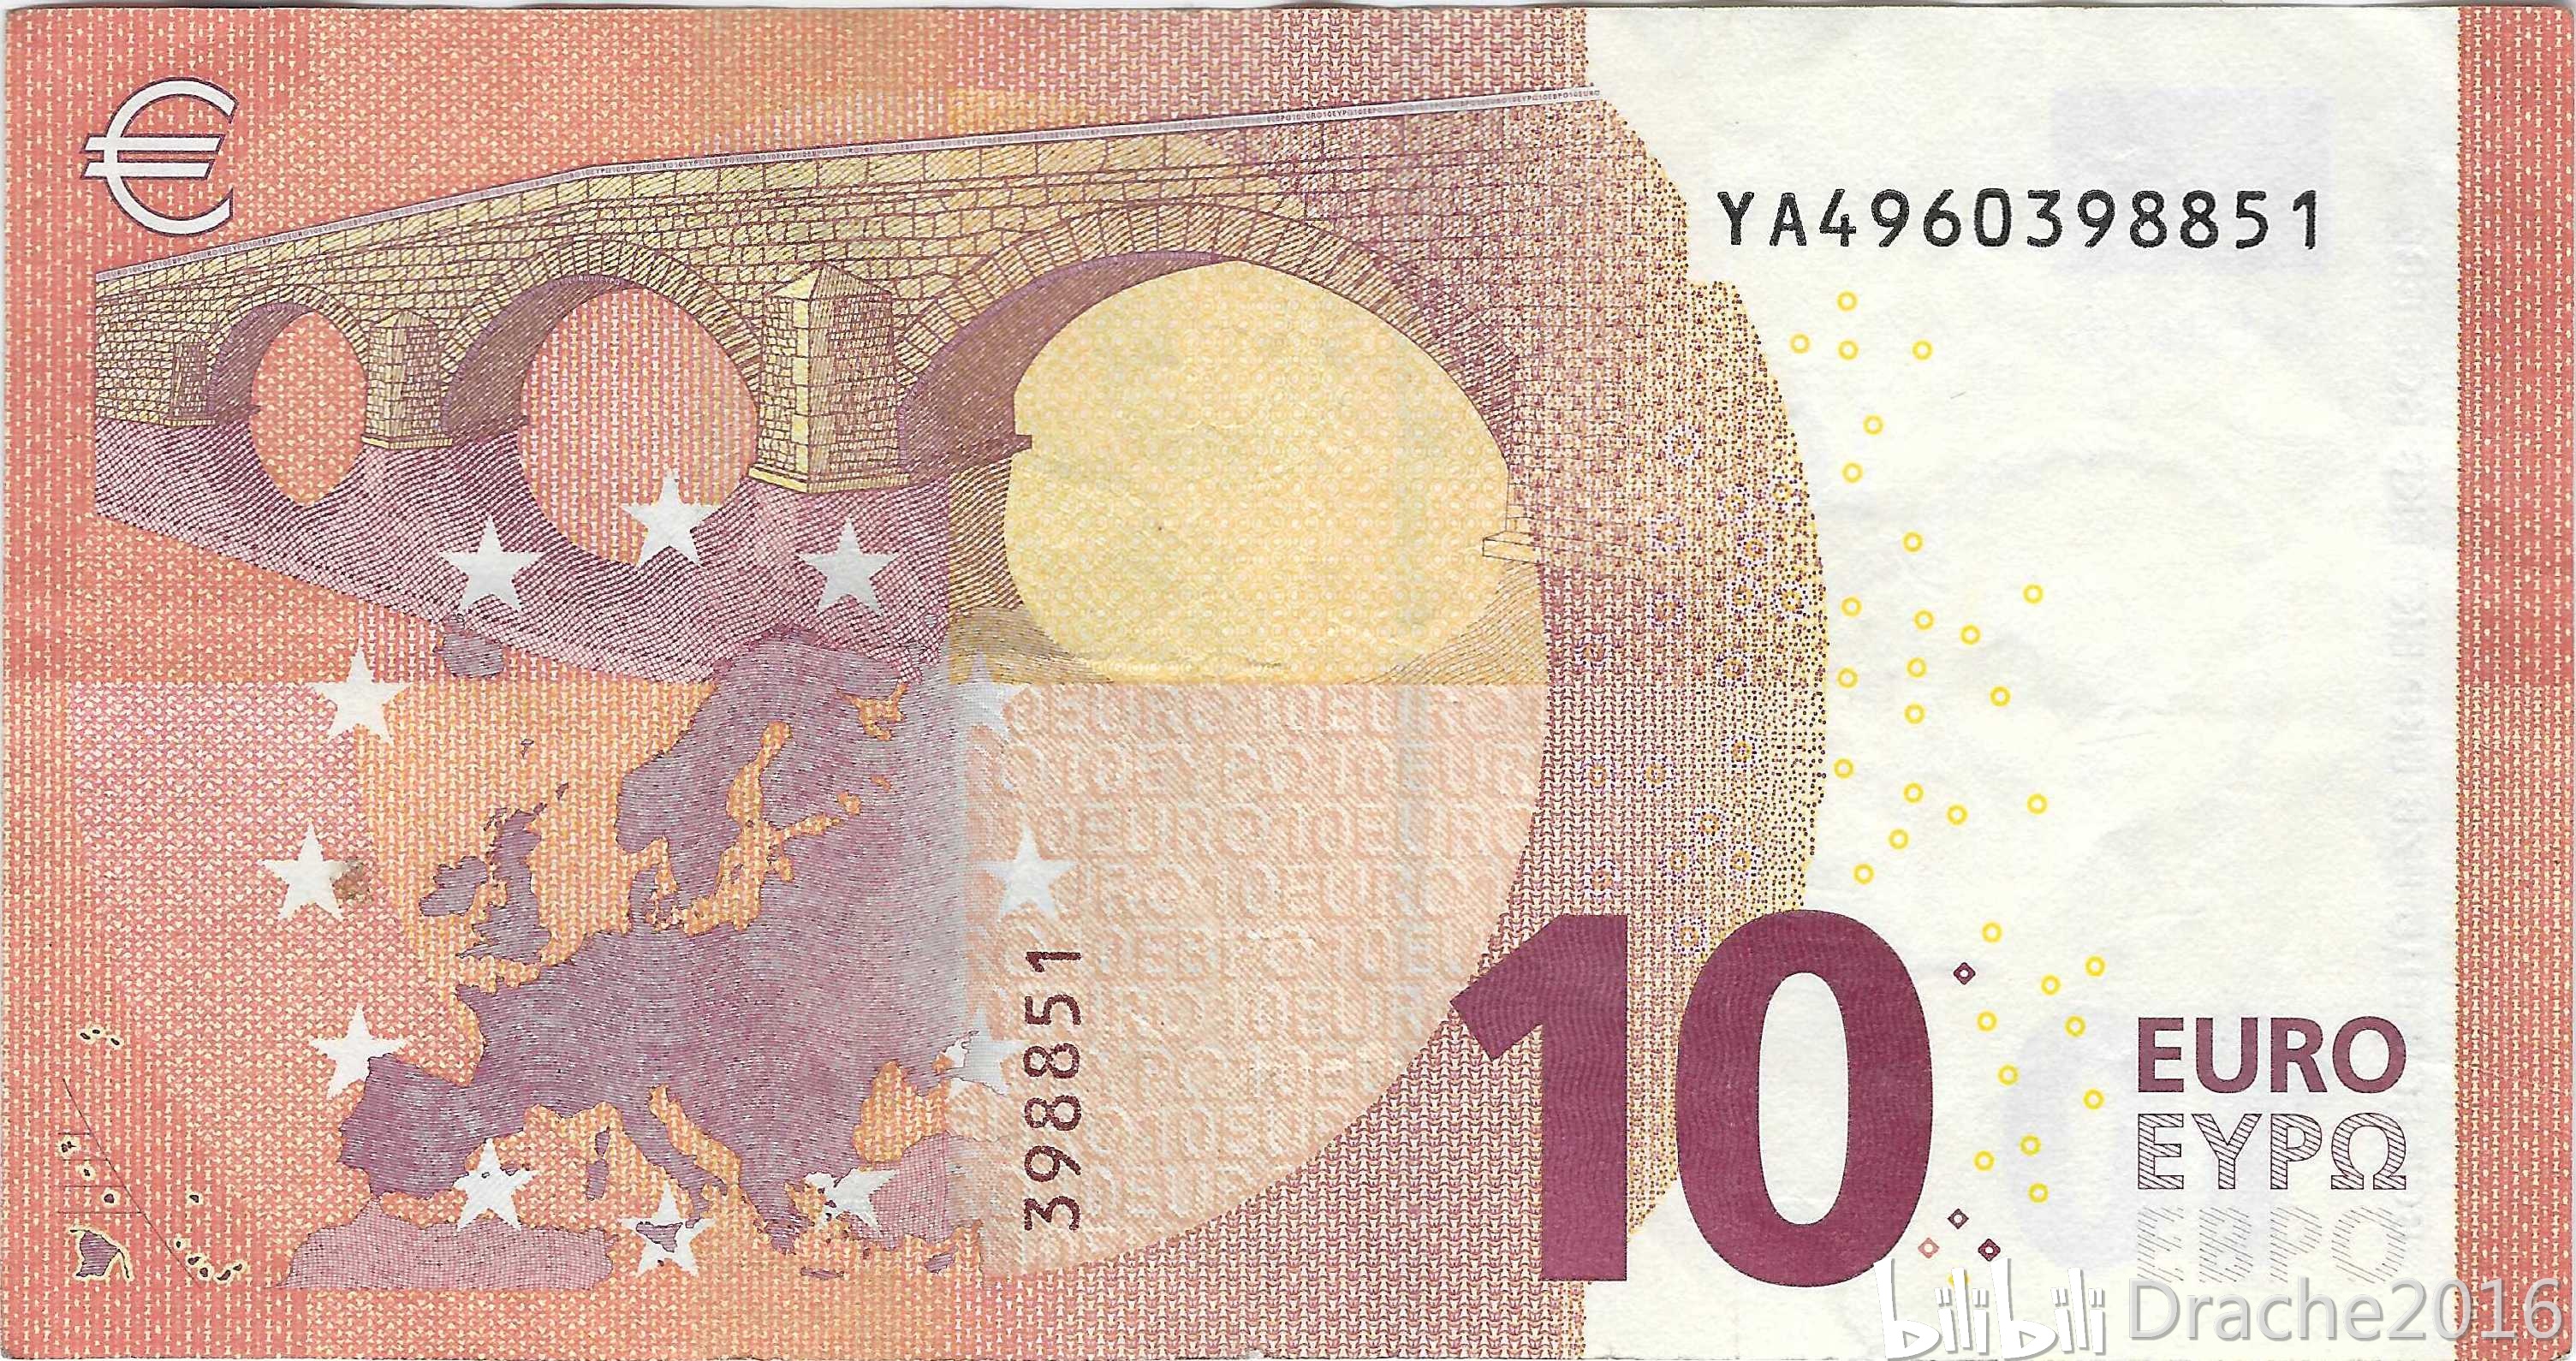 新版100欧元和200欧元面值纸币将在立陶宛流通-盐城新闻网